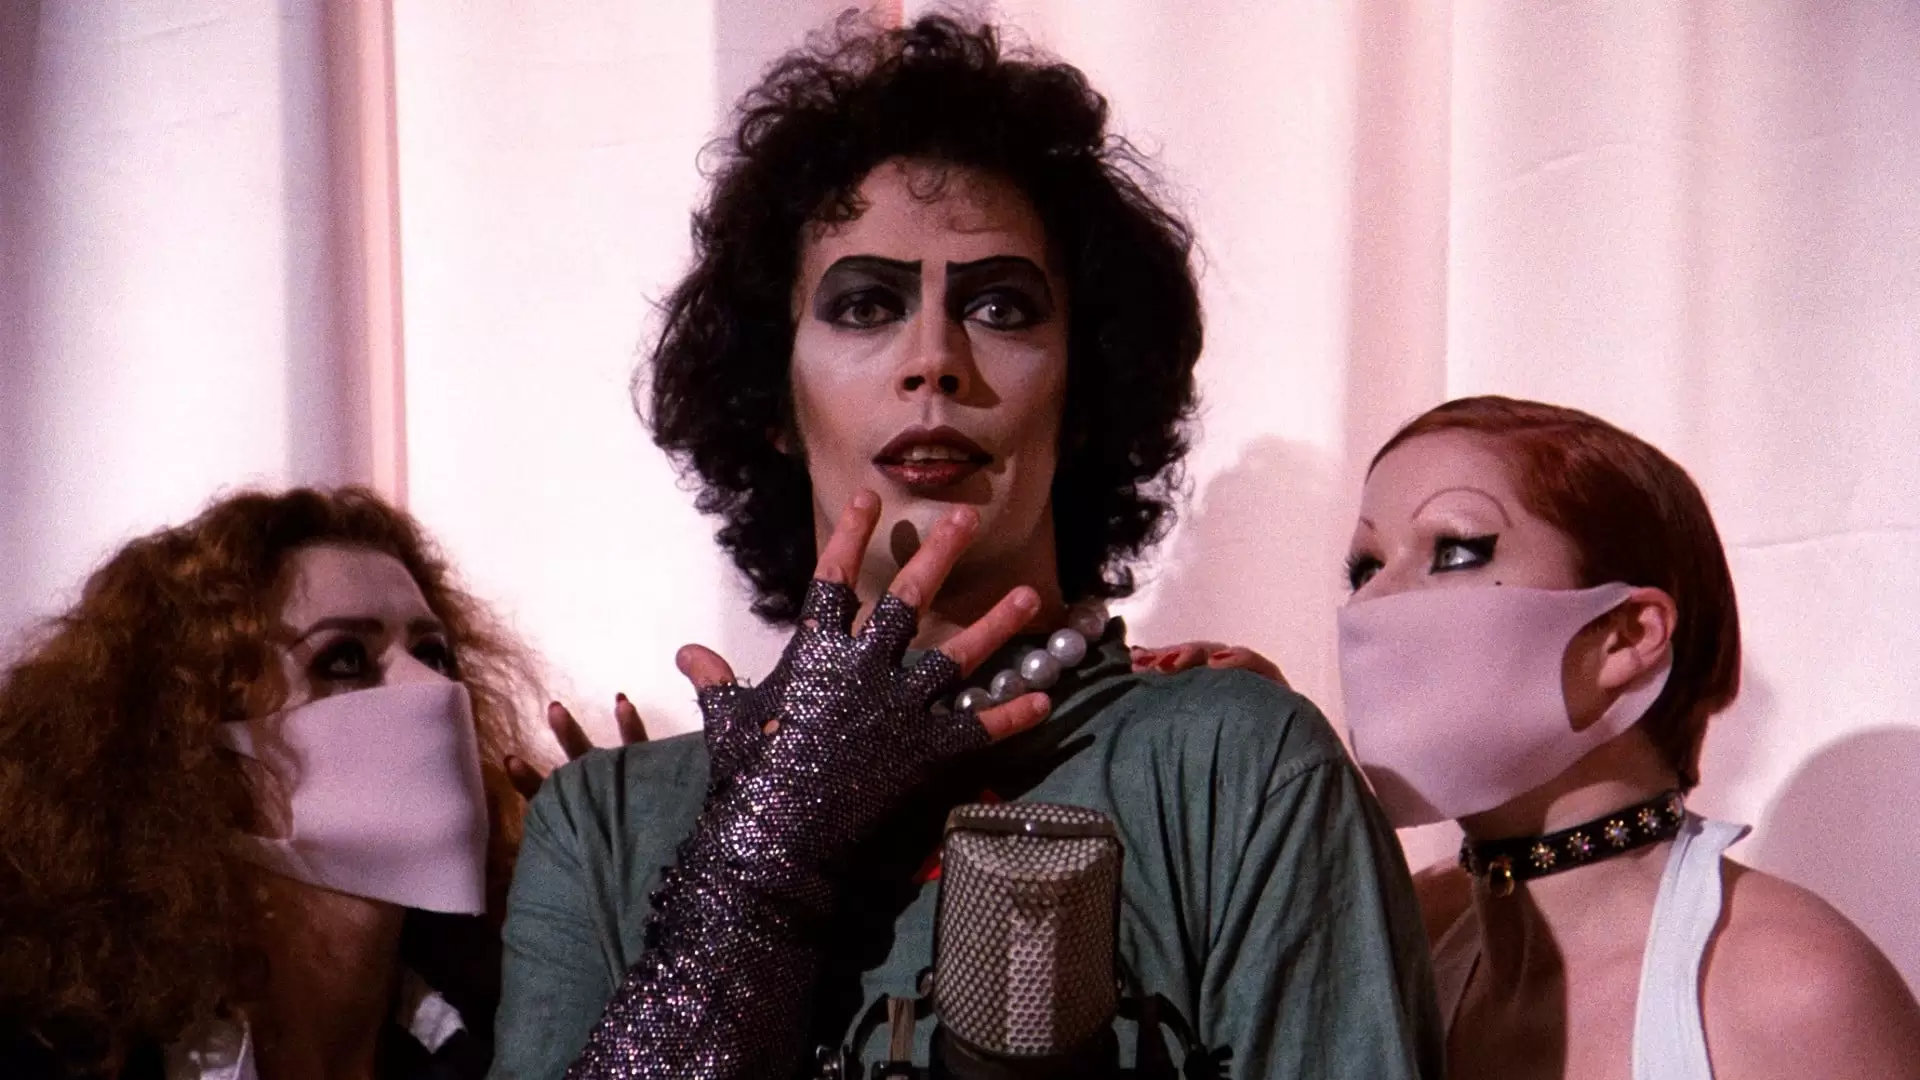 دانلود فیلم The Rocky Horror Picture Show 1975 (فیلم راکی هارور) با زیرنویس فارسی و تماشای آنلاین